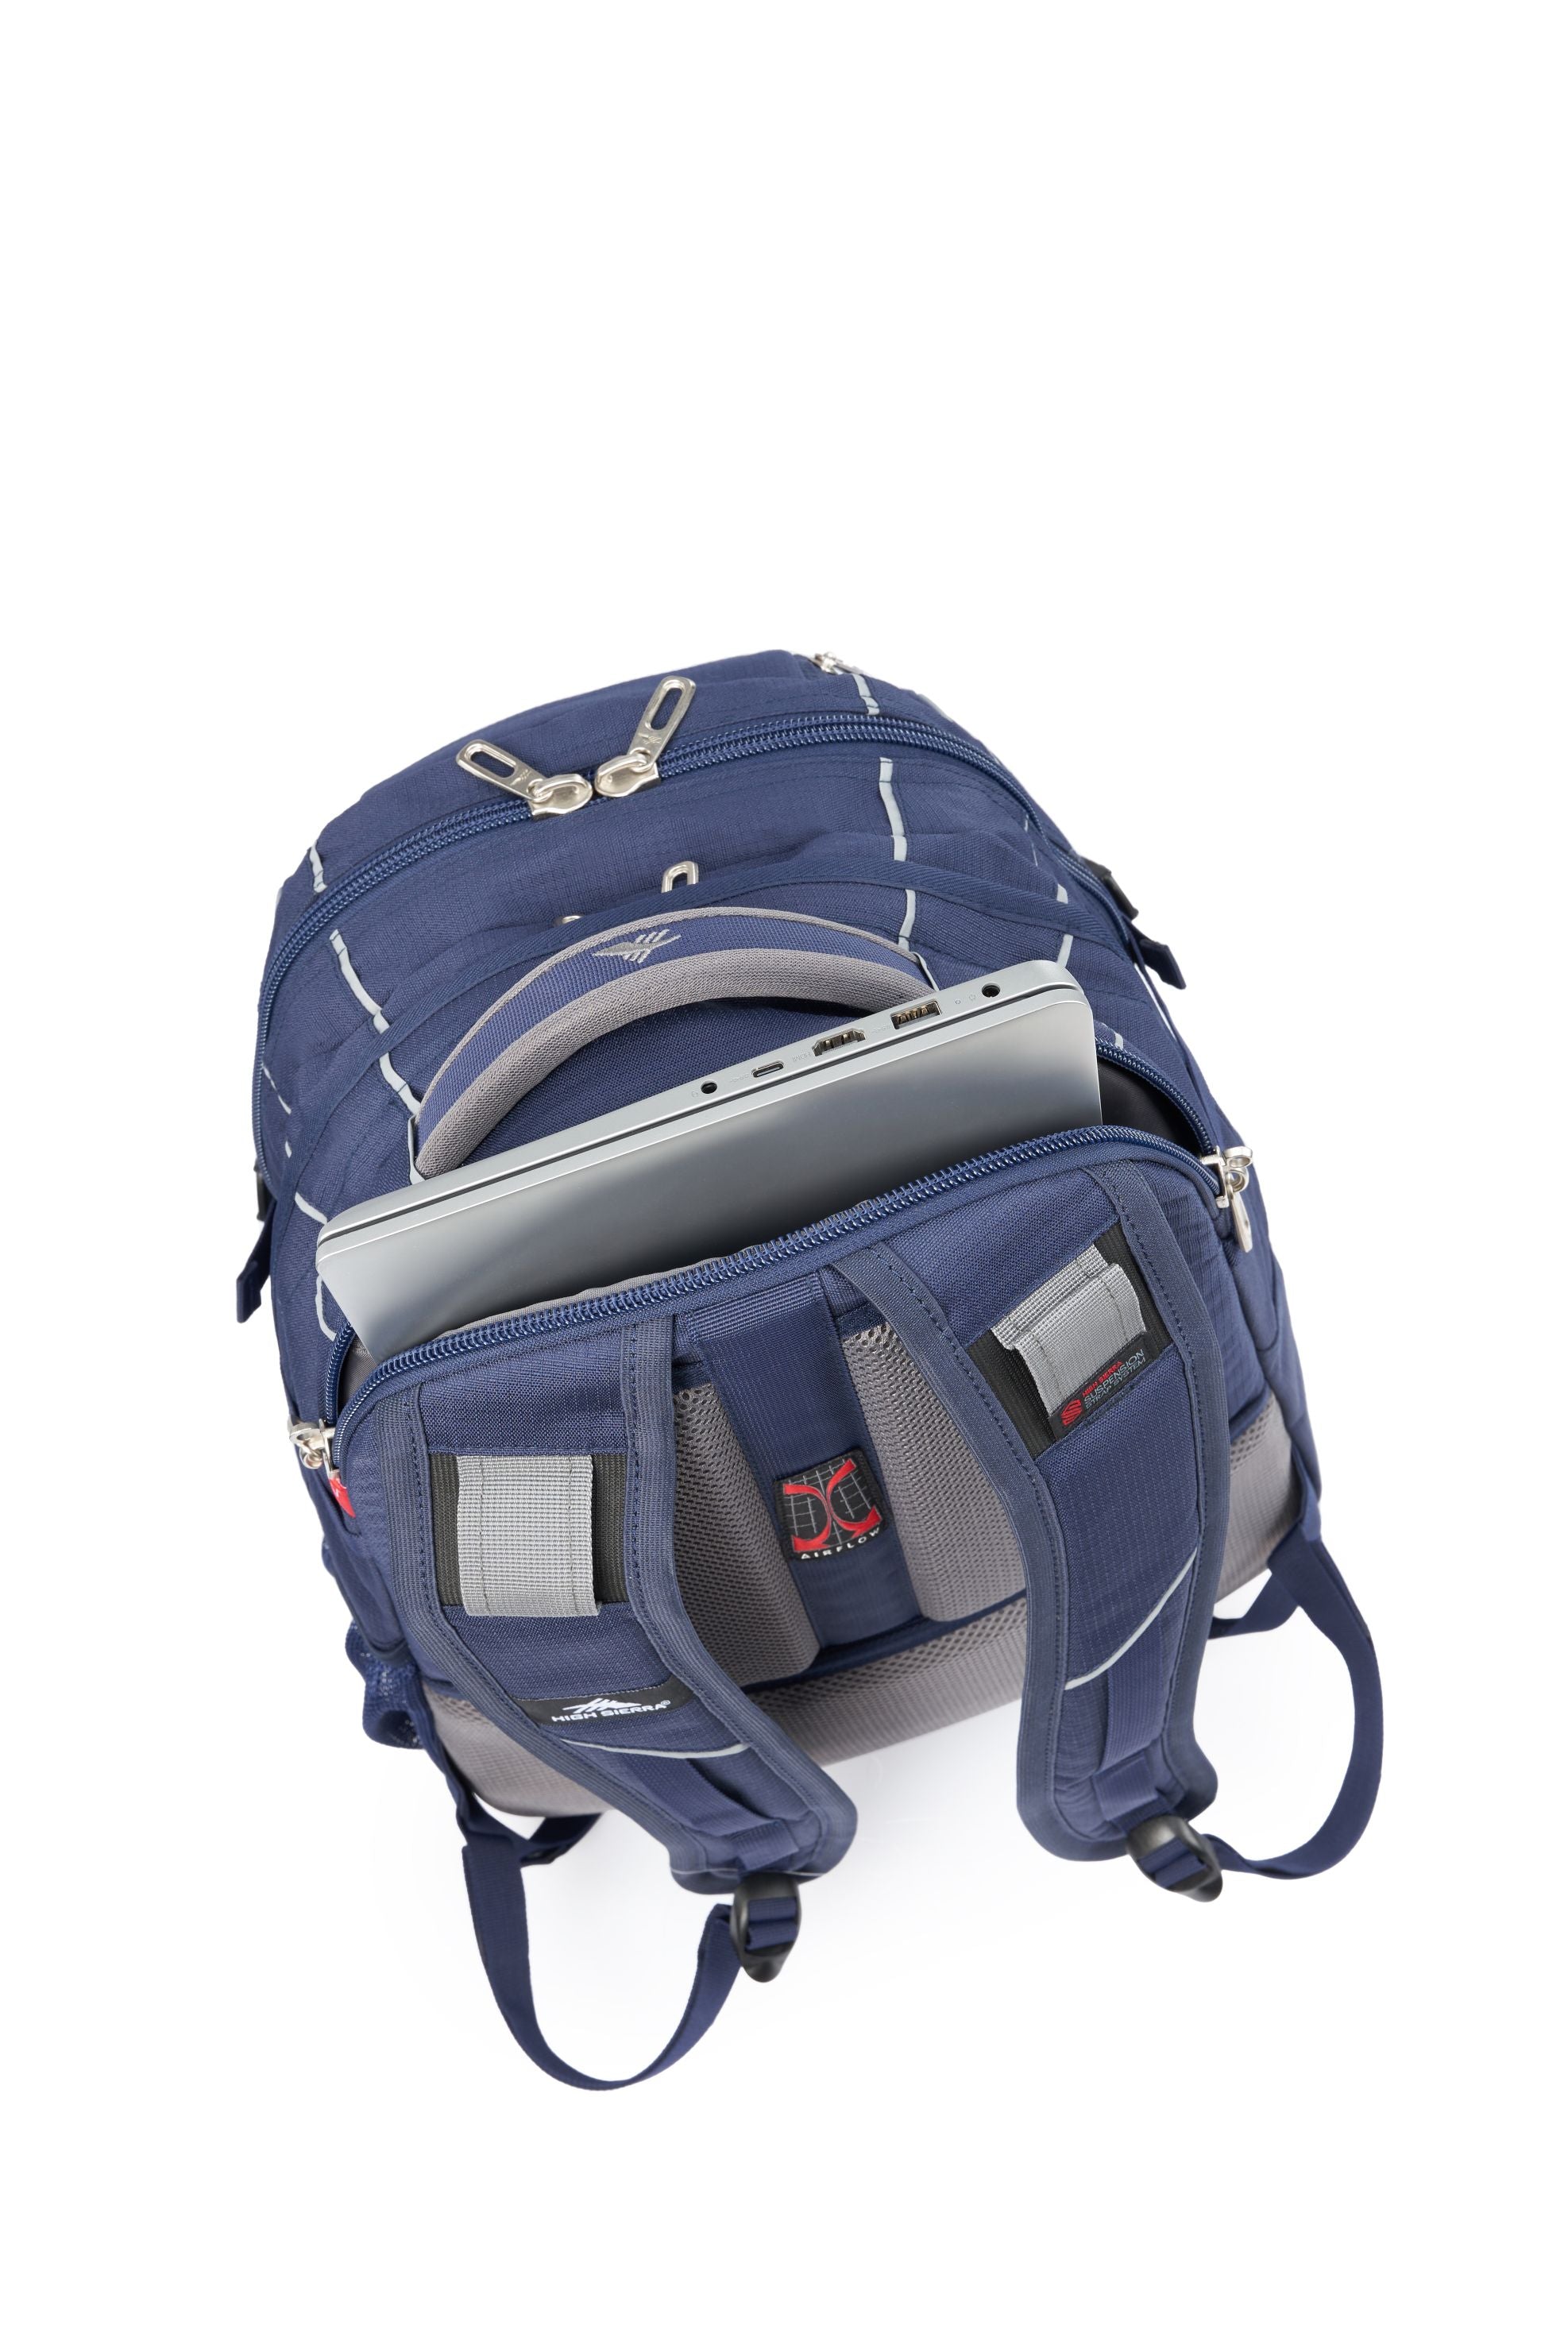 High Sierra - Access 3.0 Eco Backpack - Marine Blue-6